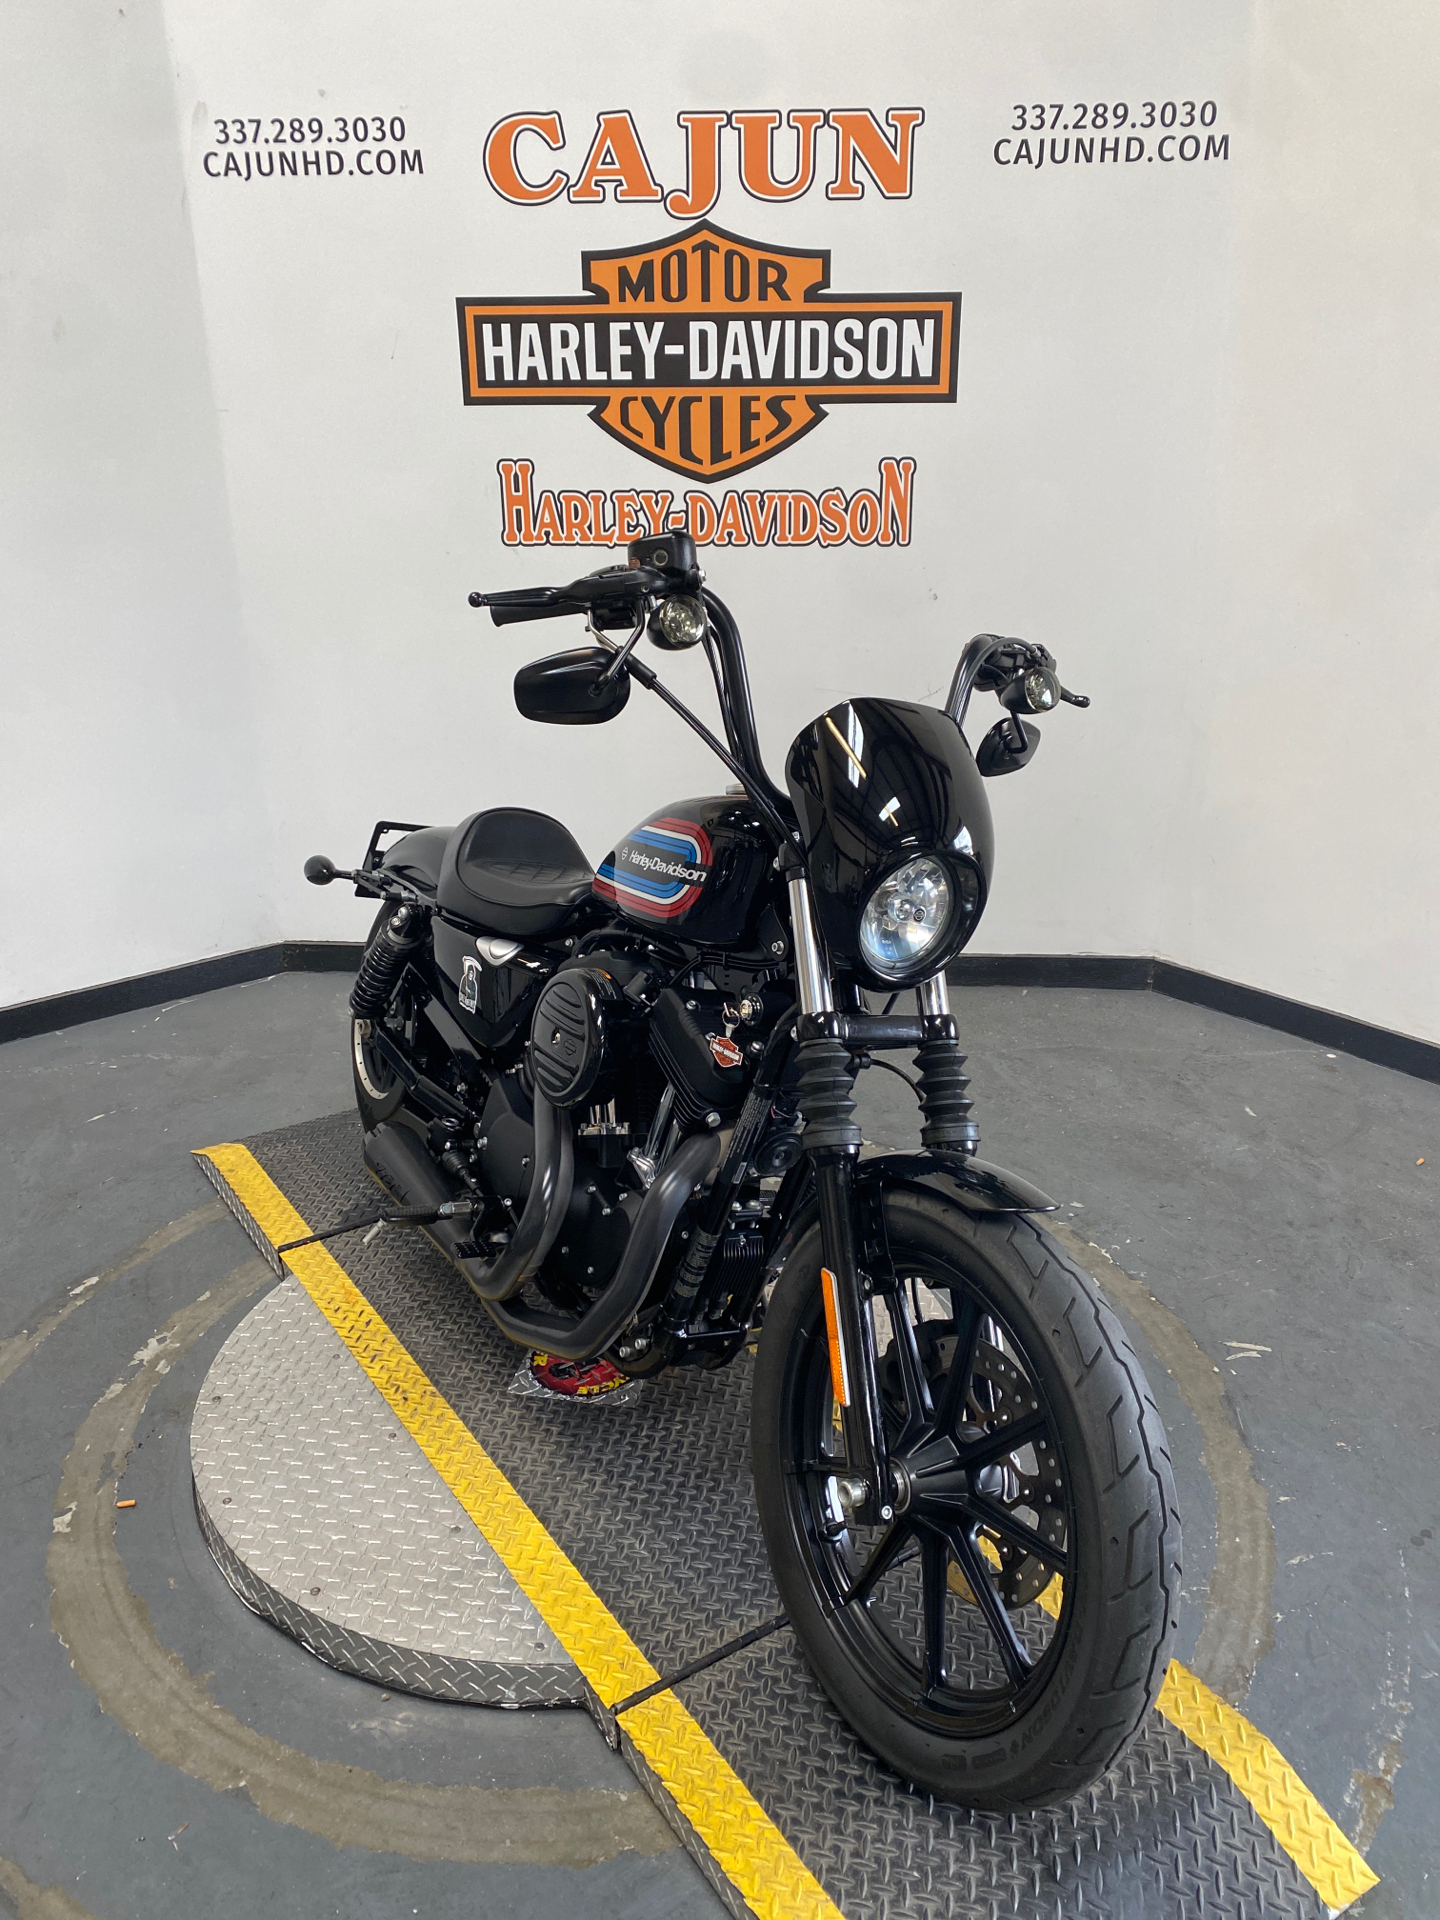 2020 Harley-Davidson Iron® 1200 near me - Photo 5